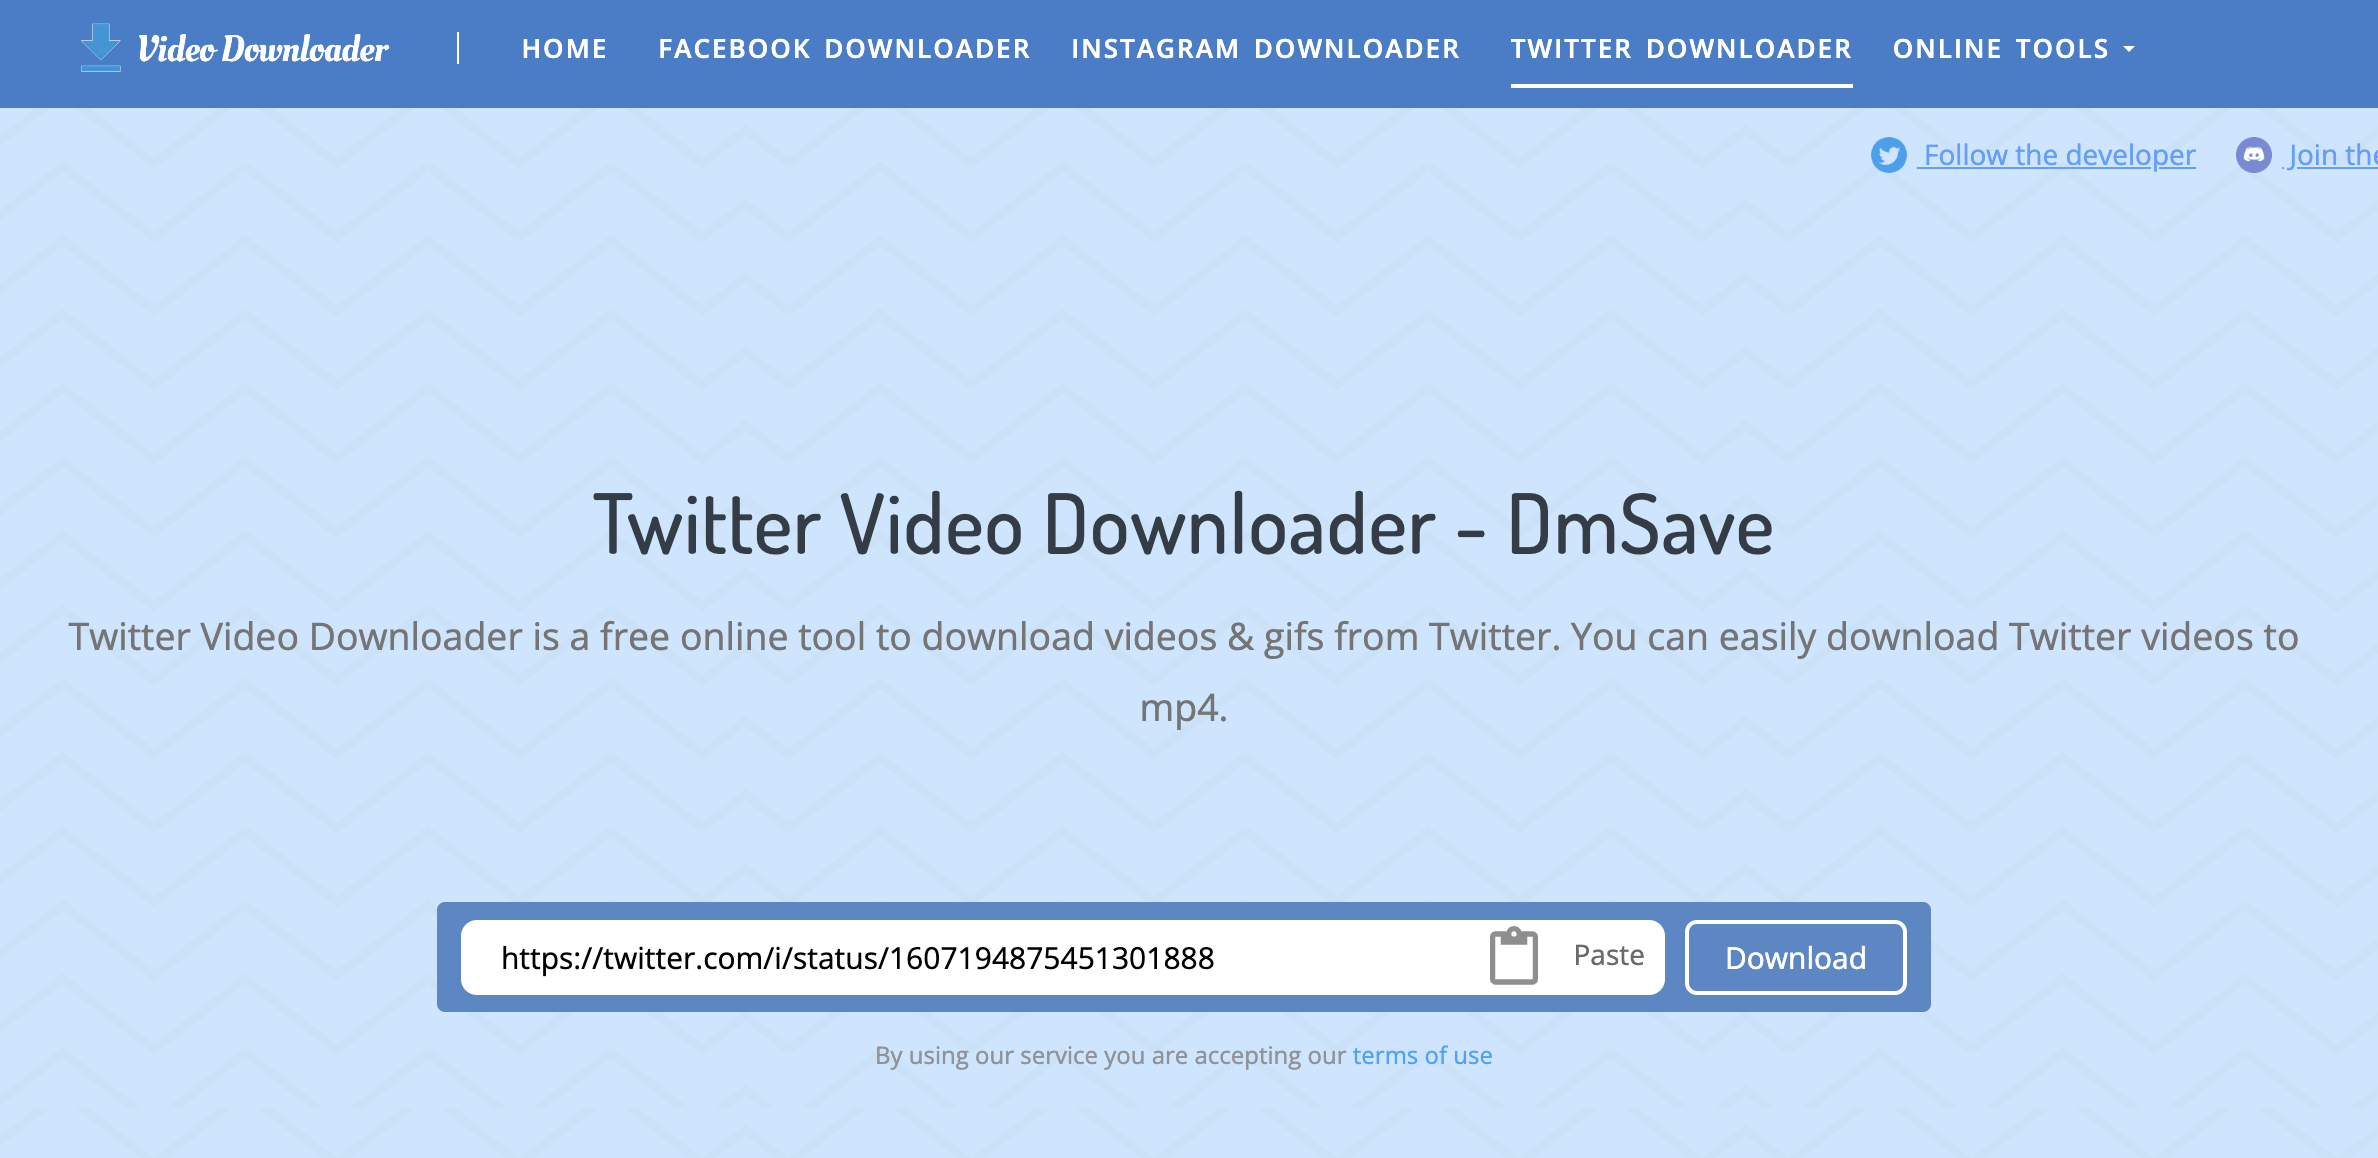 Abra o DmSave, cole o link do vídeo do Twitter copiado na caixa de entrada e clique em [Download];